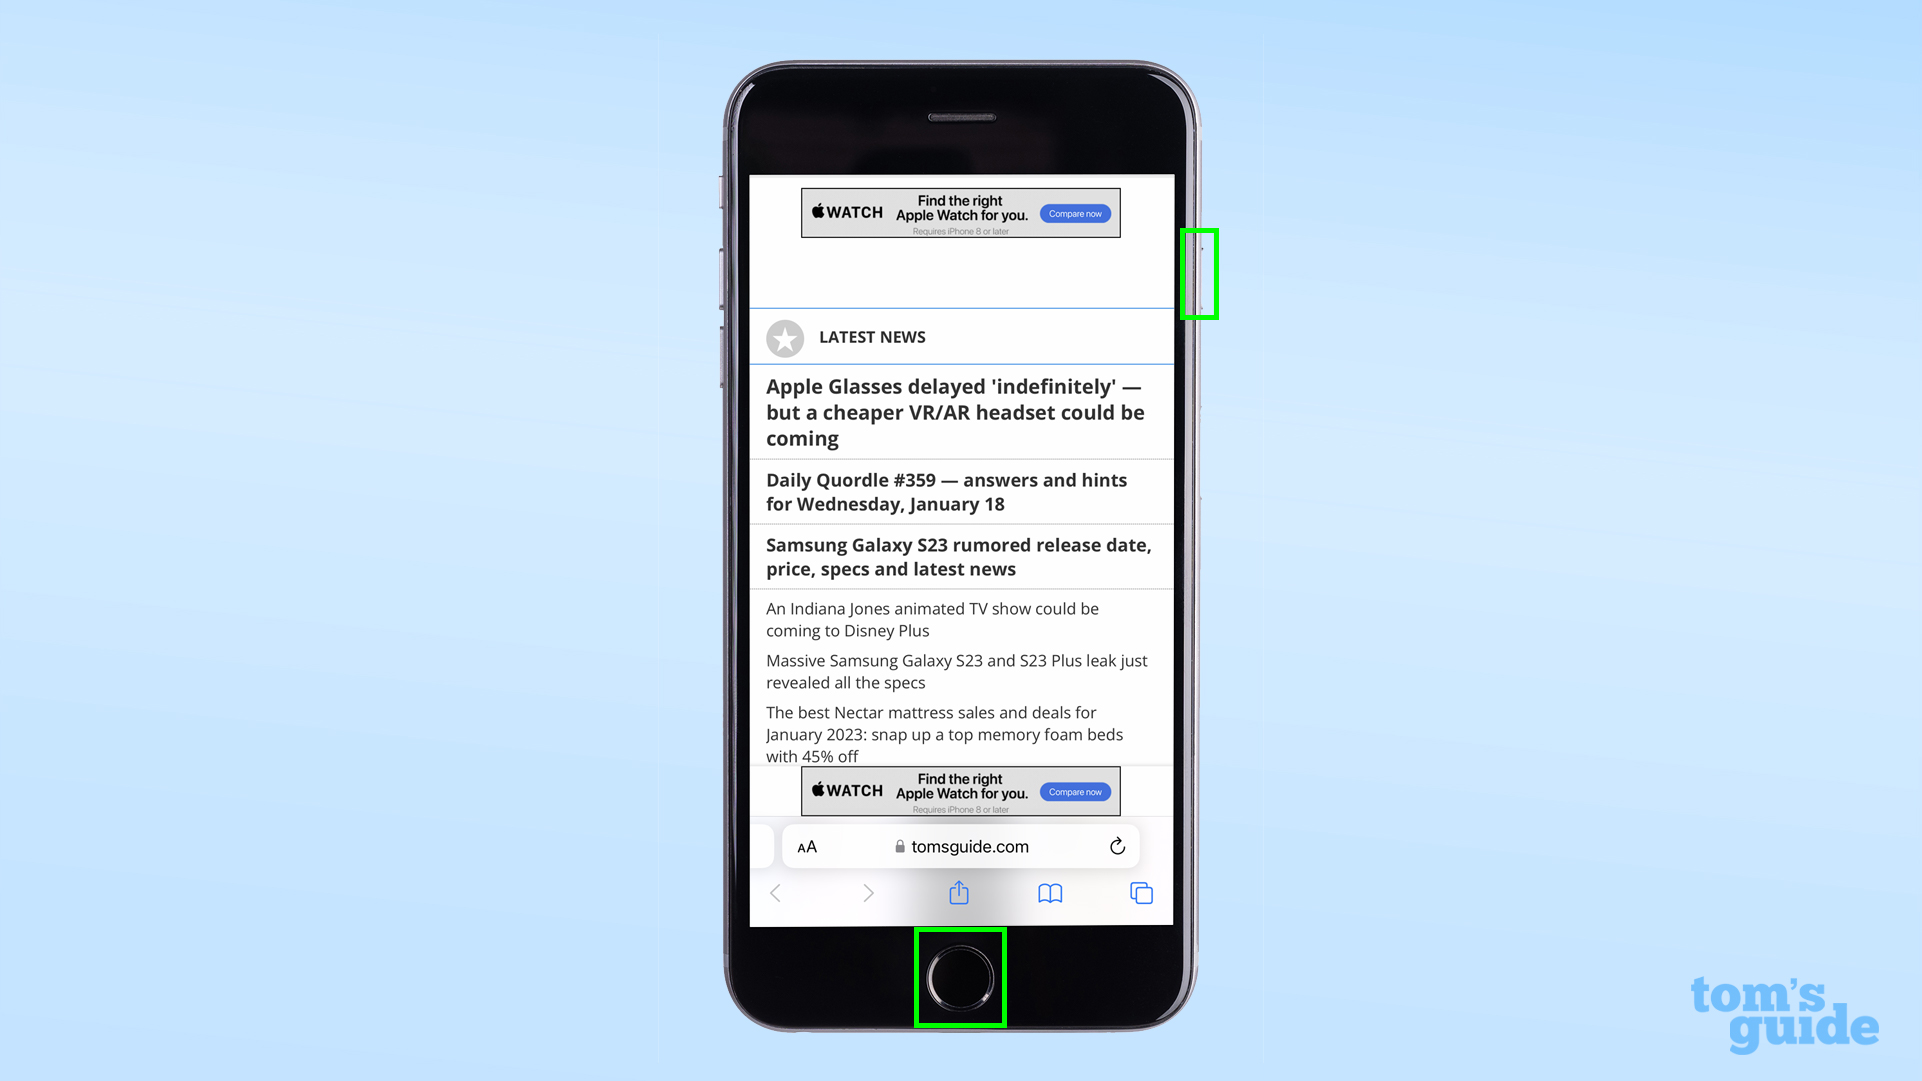 Иллюстрация создания снимка экрана на iPhone 8 с использованием боковых кнопок и кнопок «Домой».